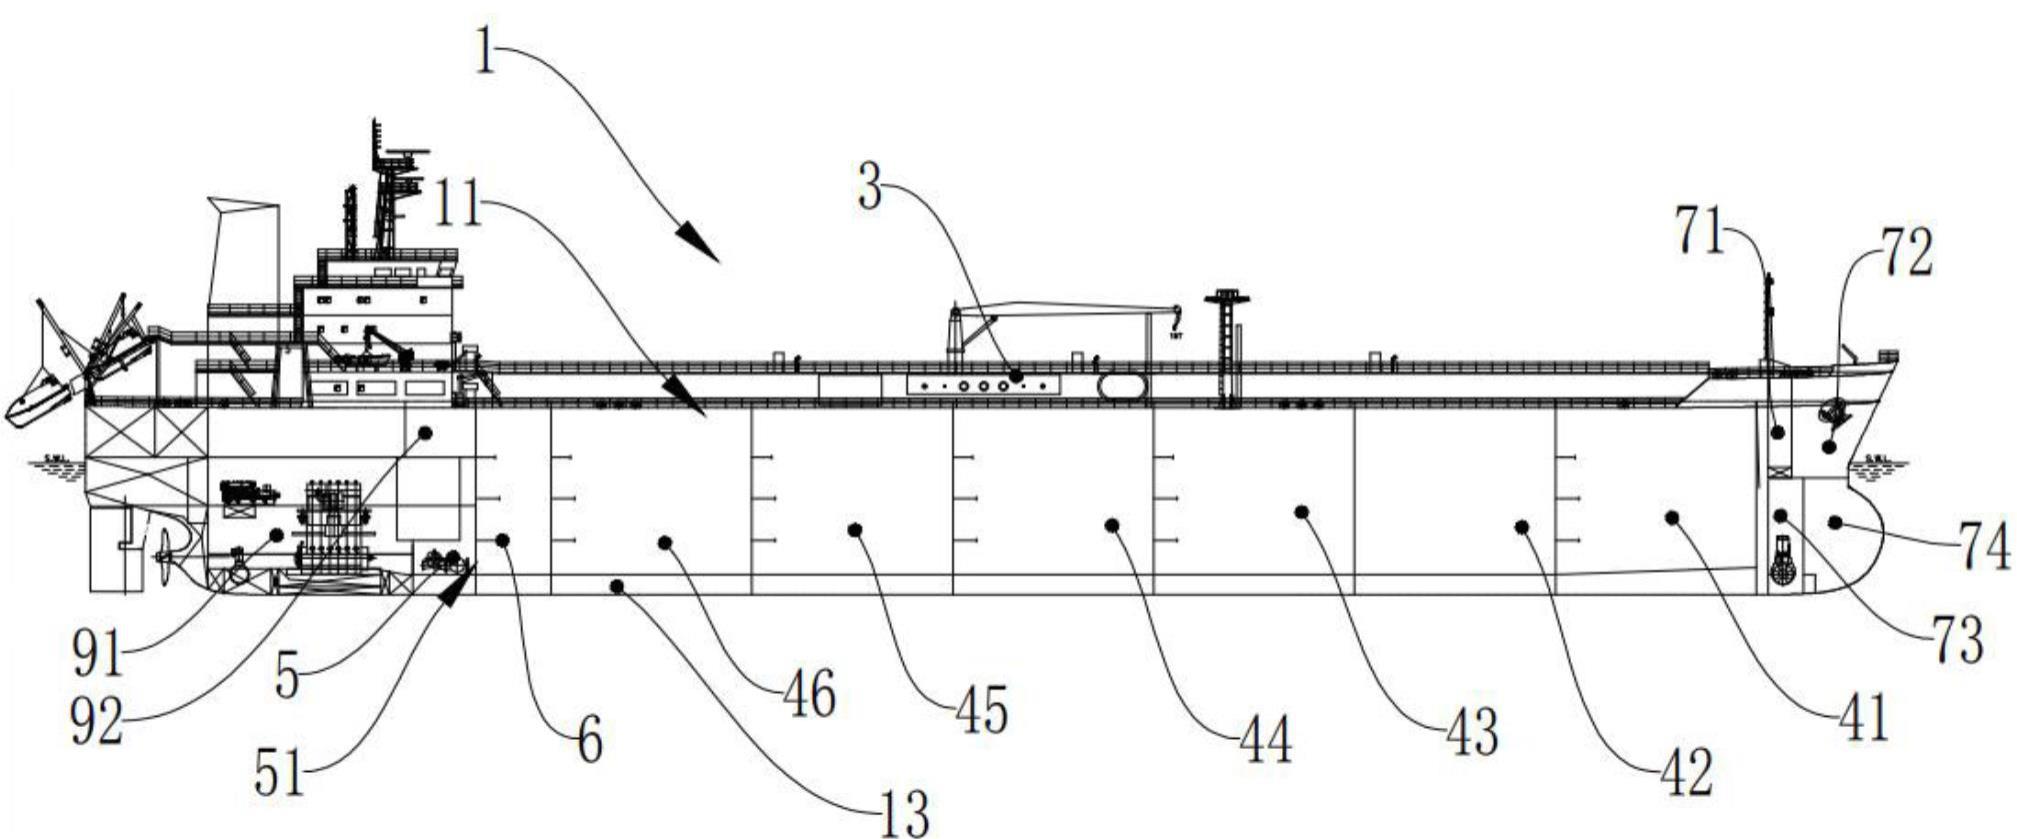 一种原油船的货油舱布置结构